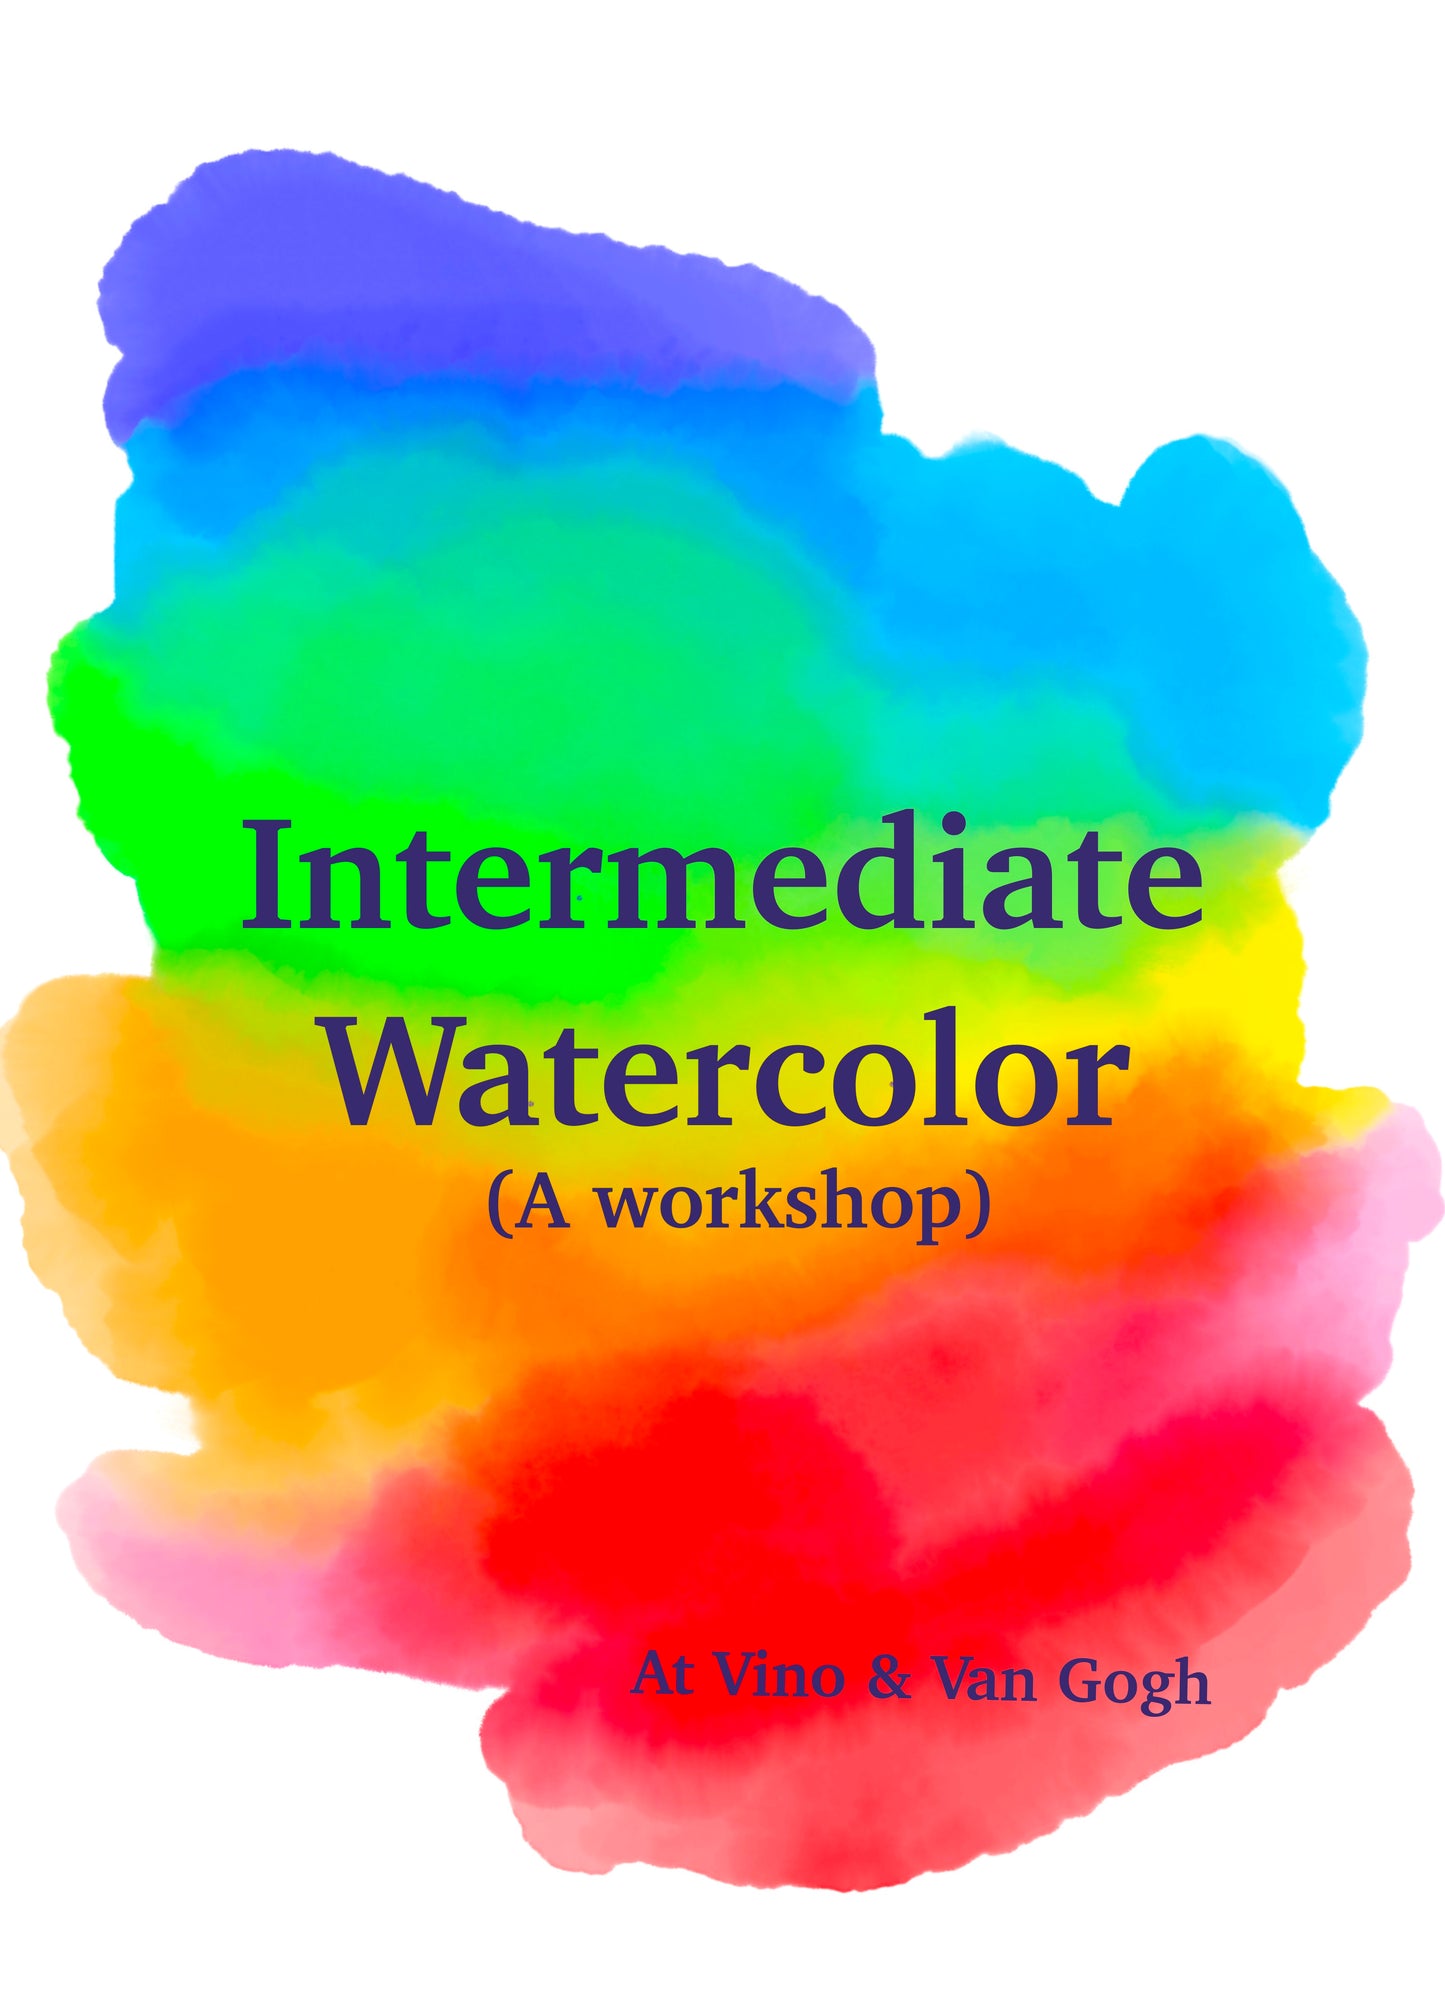 Intermediate Watercolor Workshop!